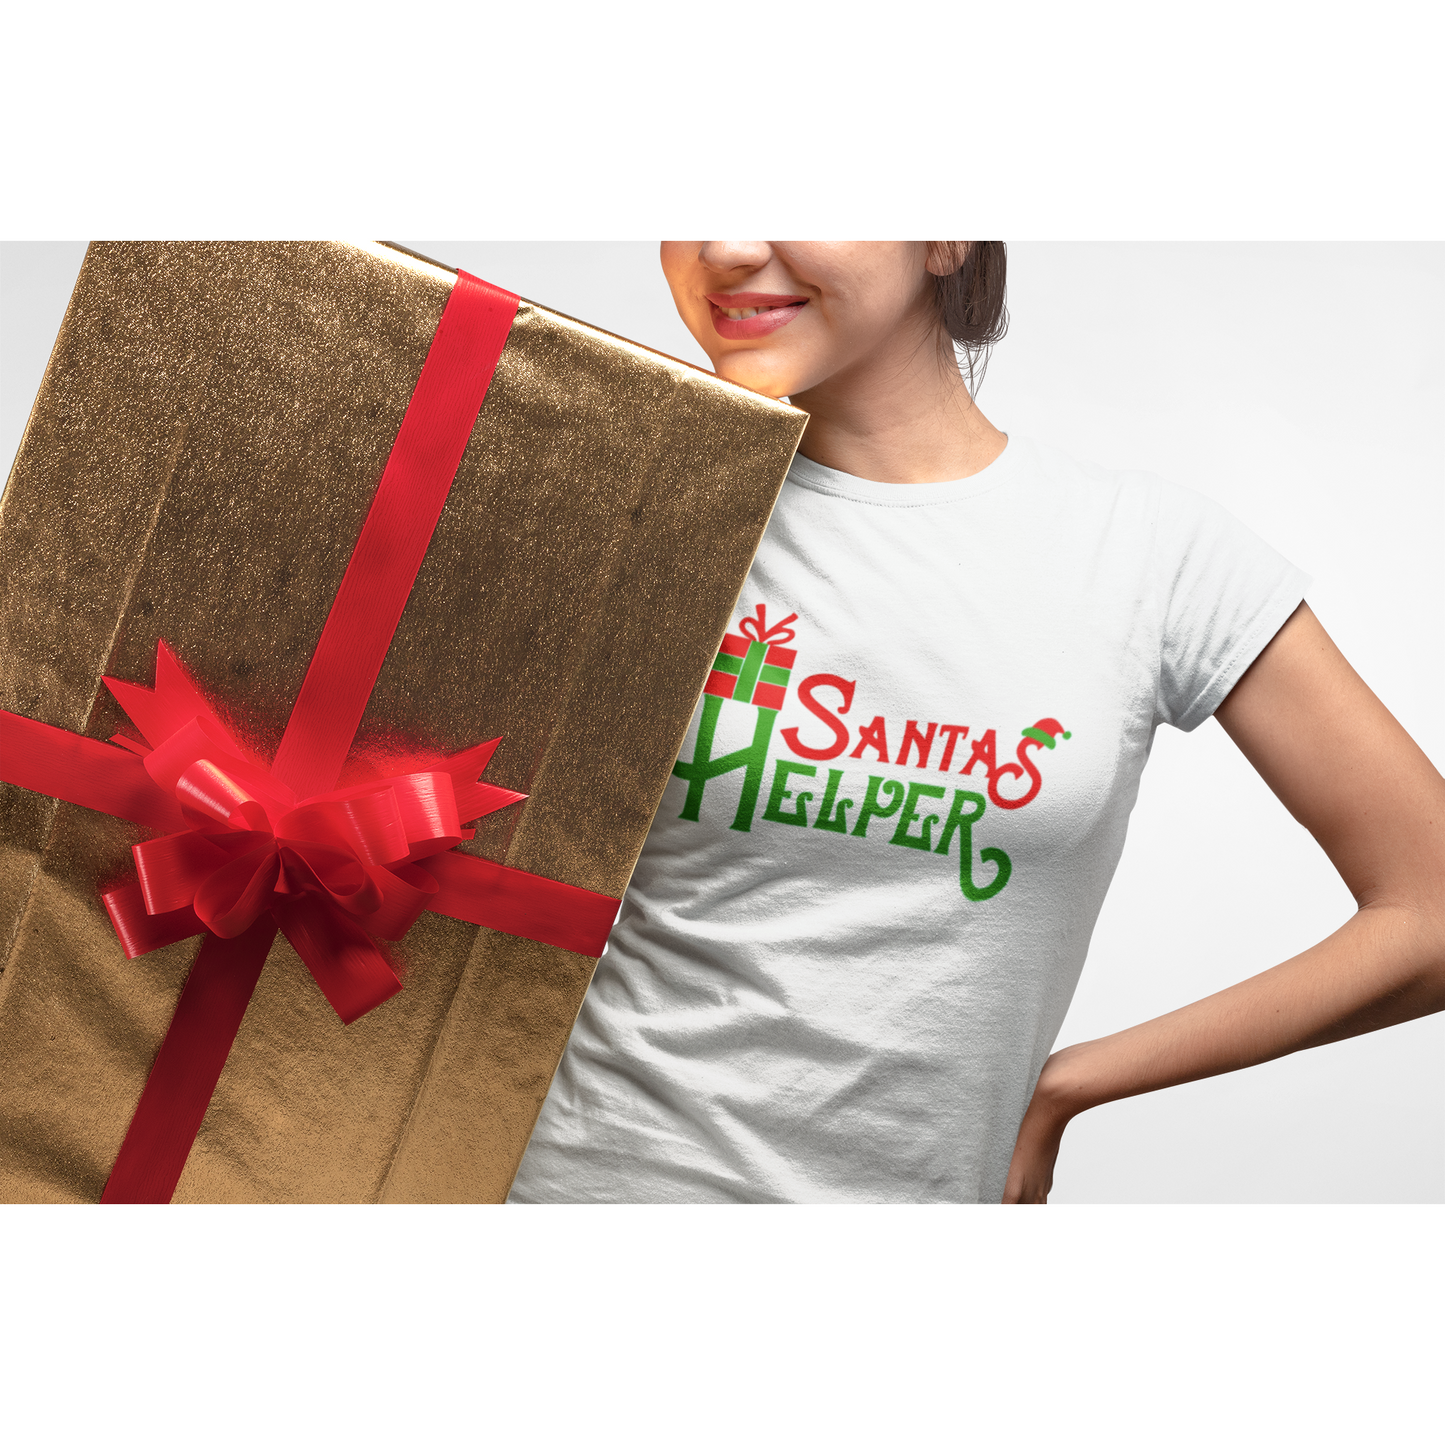 Santa's Helper Glitter Bling Christmas T Shirt